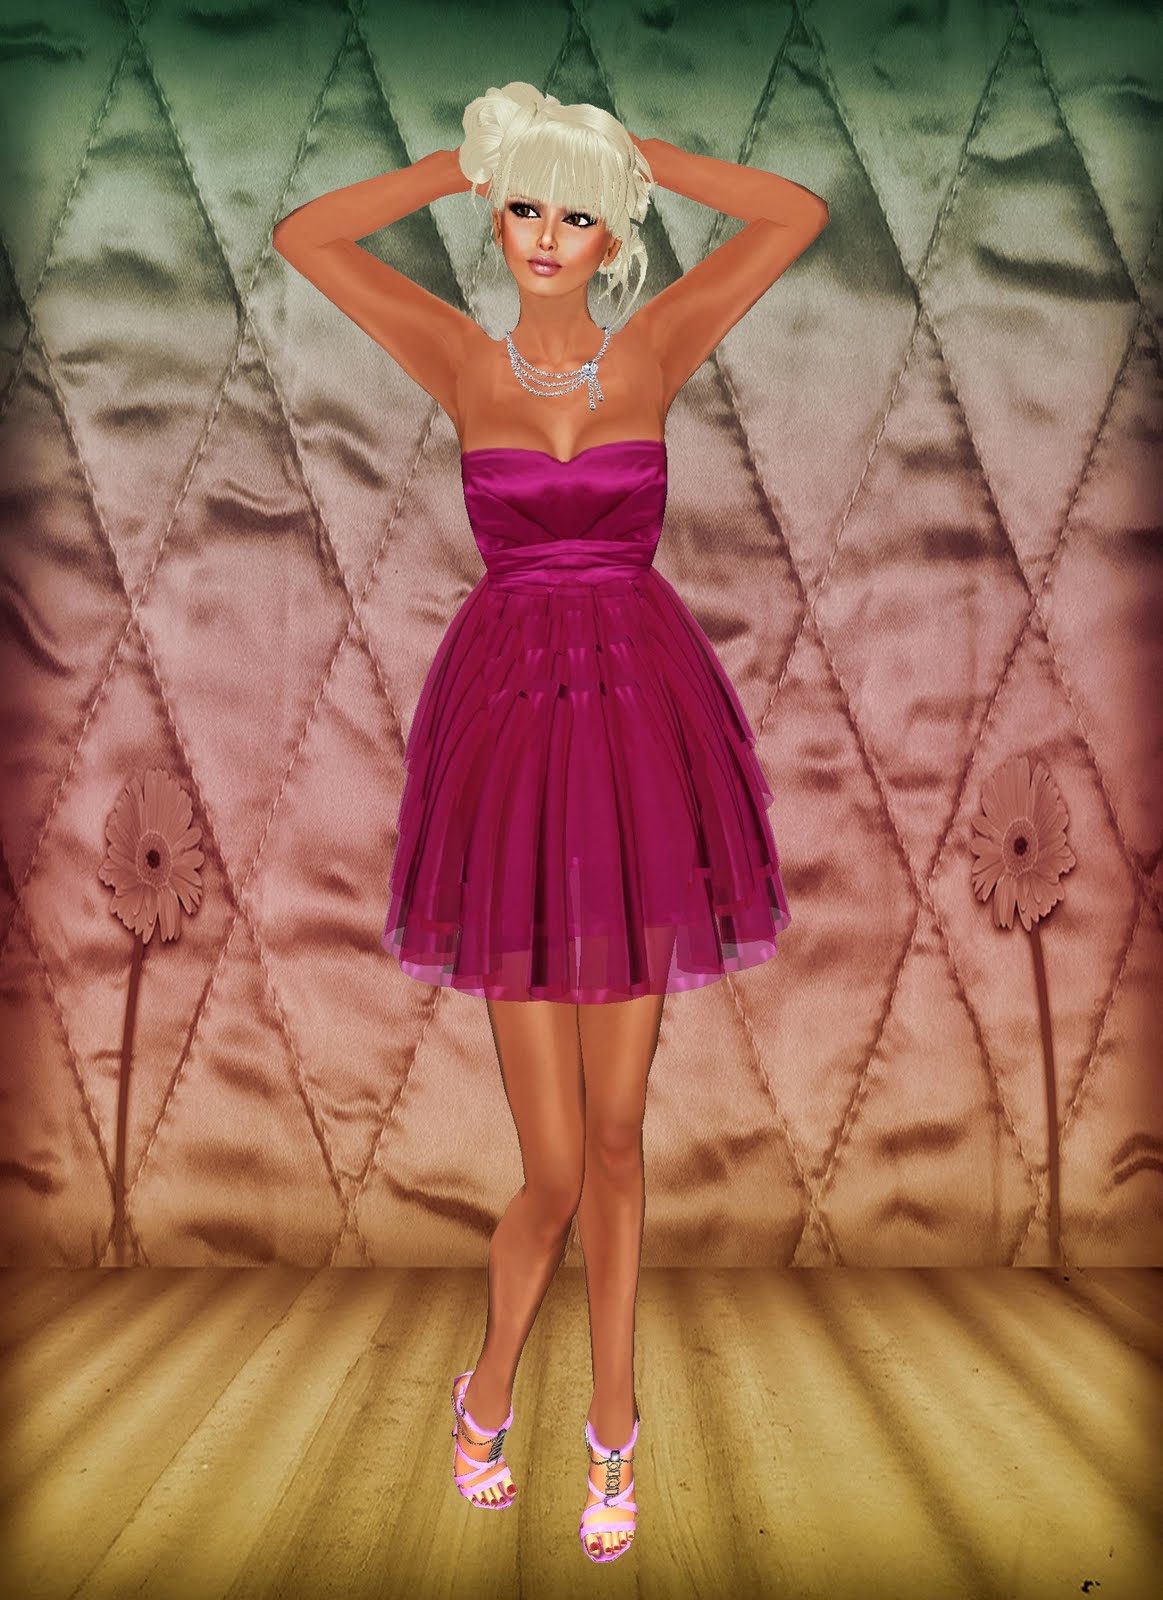 Dress: Rose Princess Dress